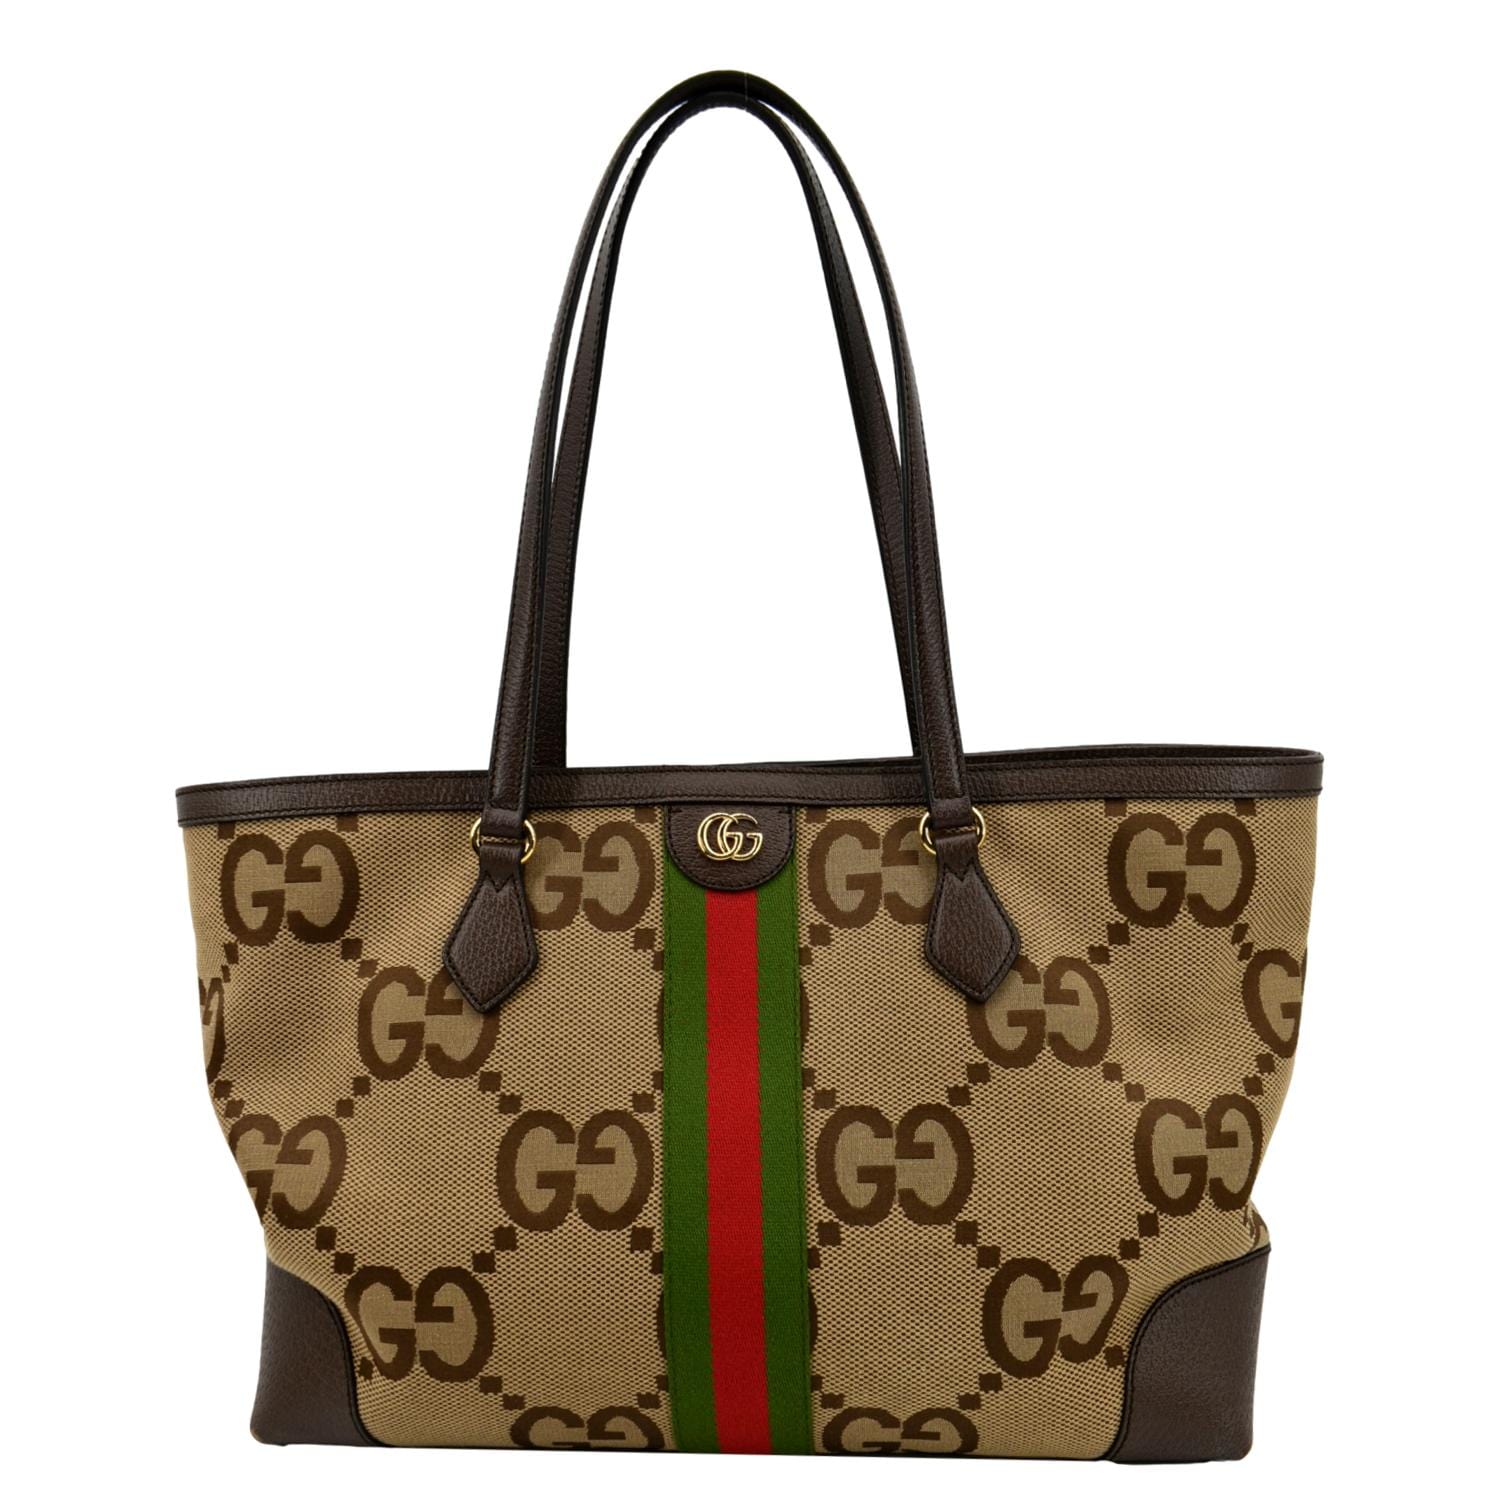 Gucci Jumbo GG tote bag